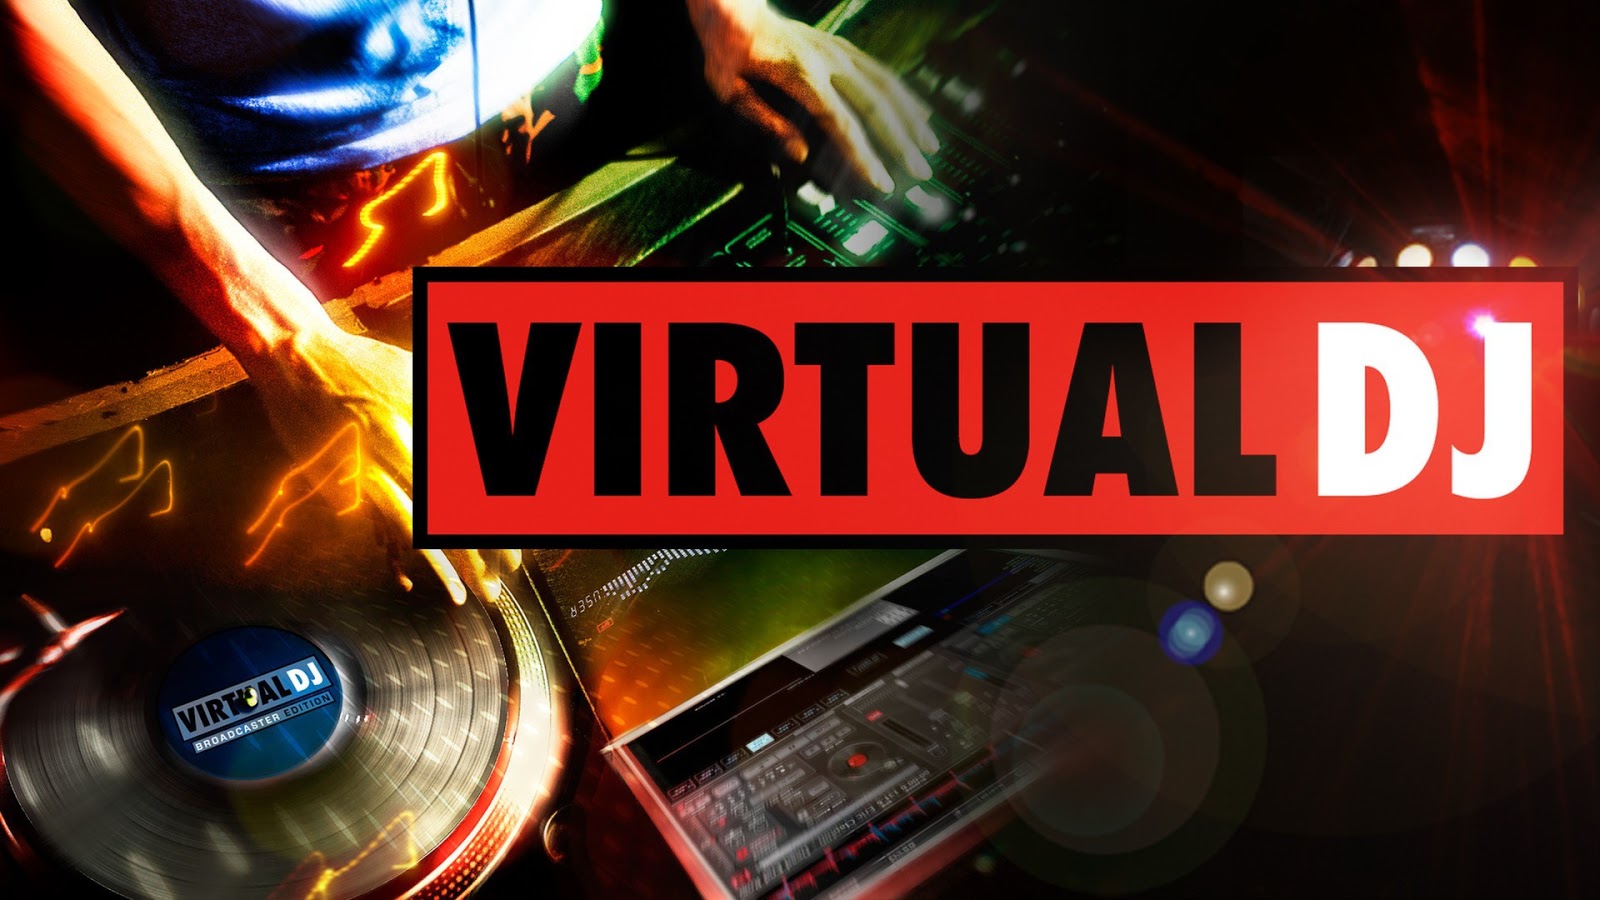 virtualdj 6.0